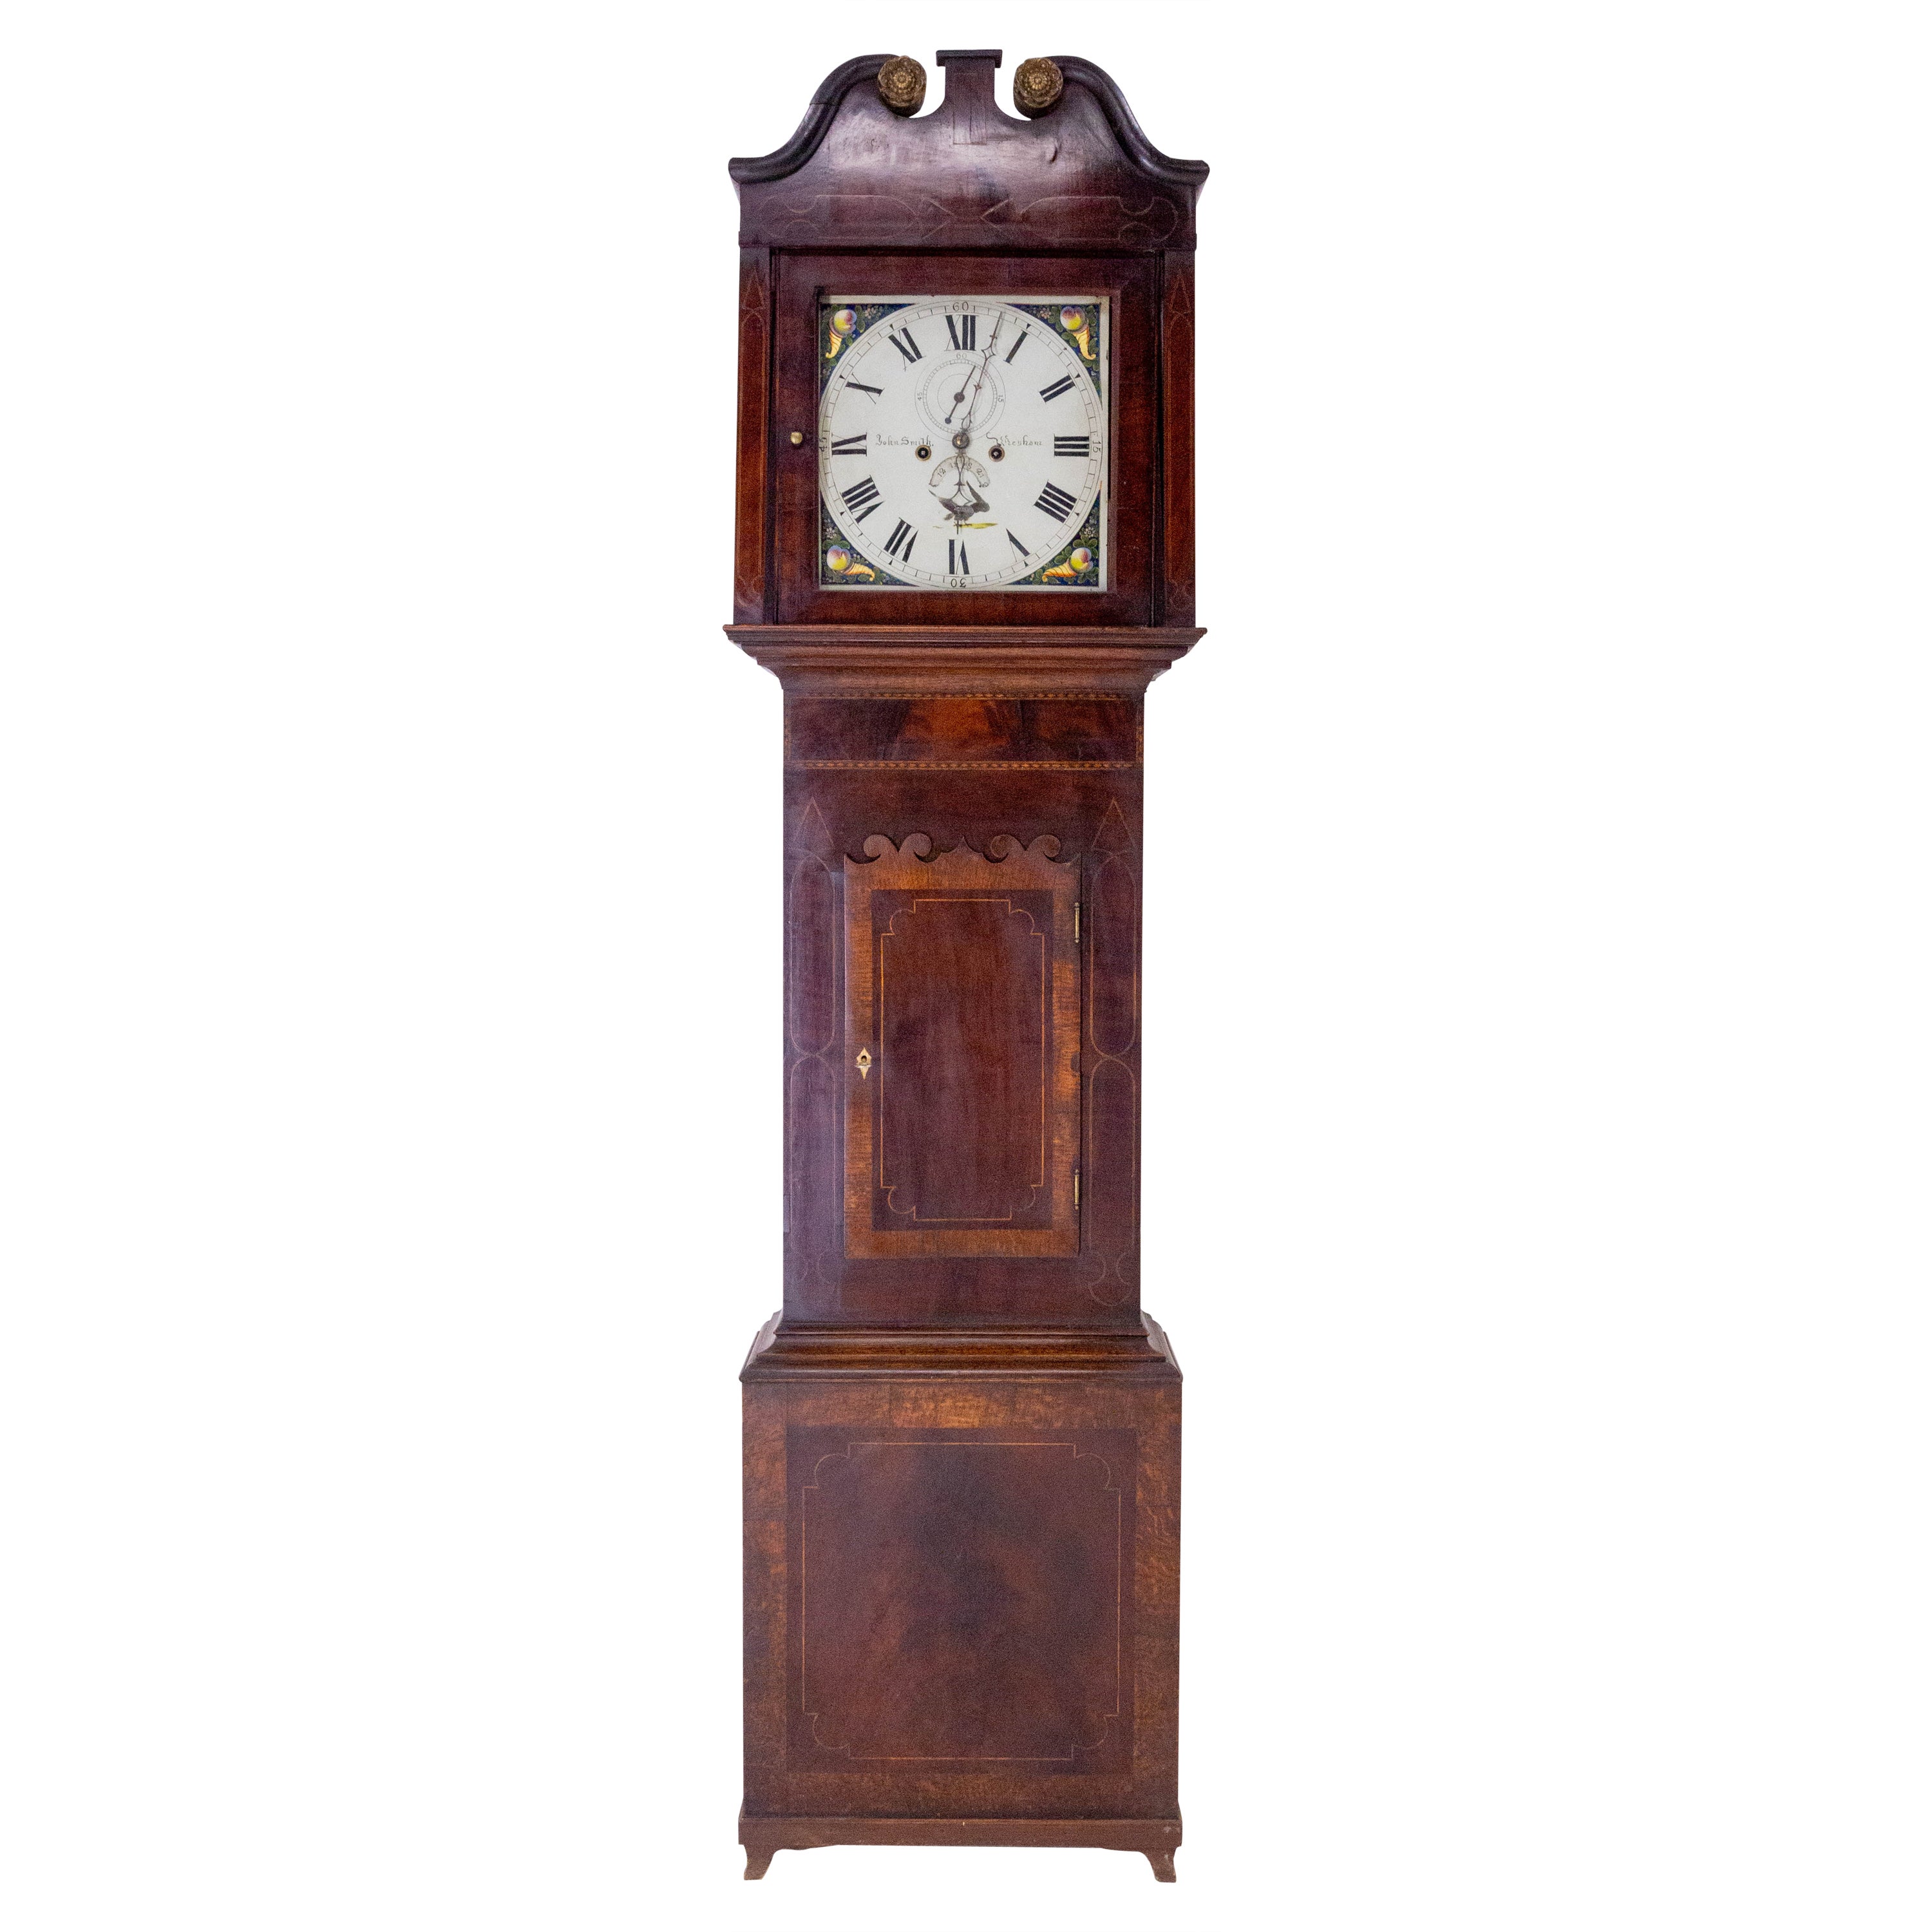 English Longcase or Grandfather Clock George III 19th Century